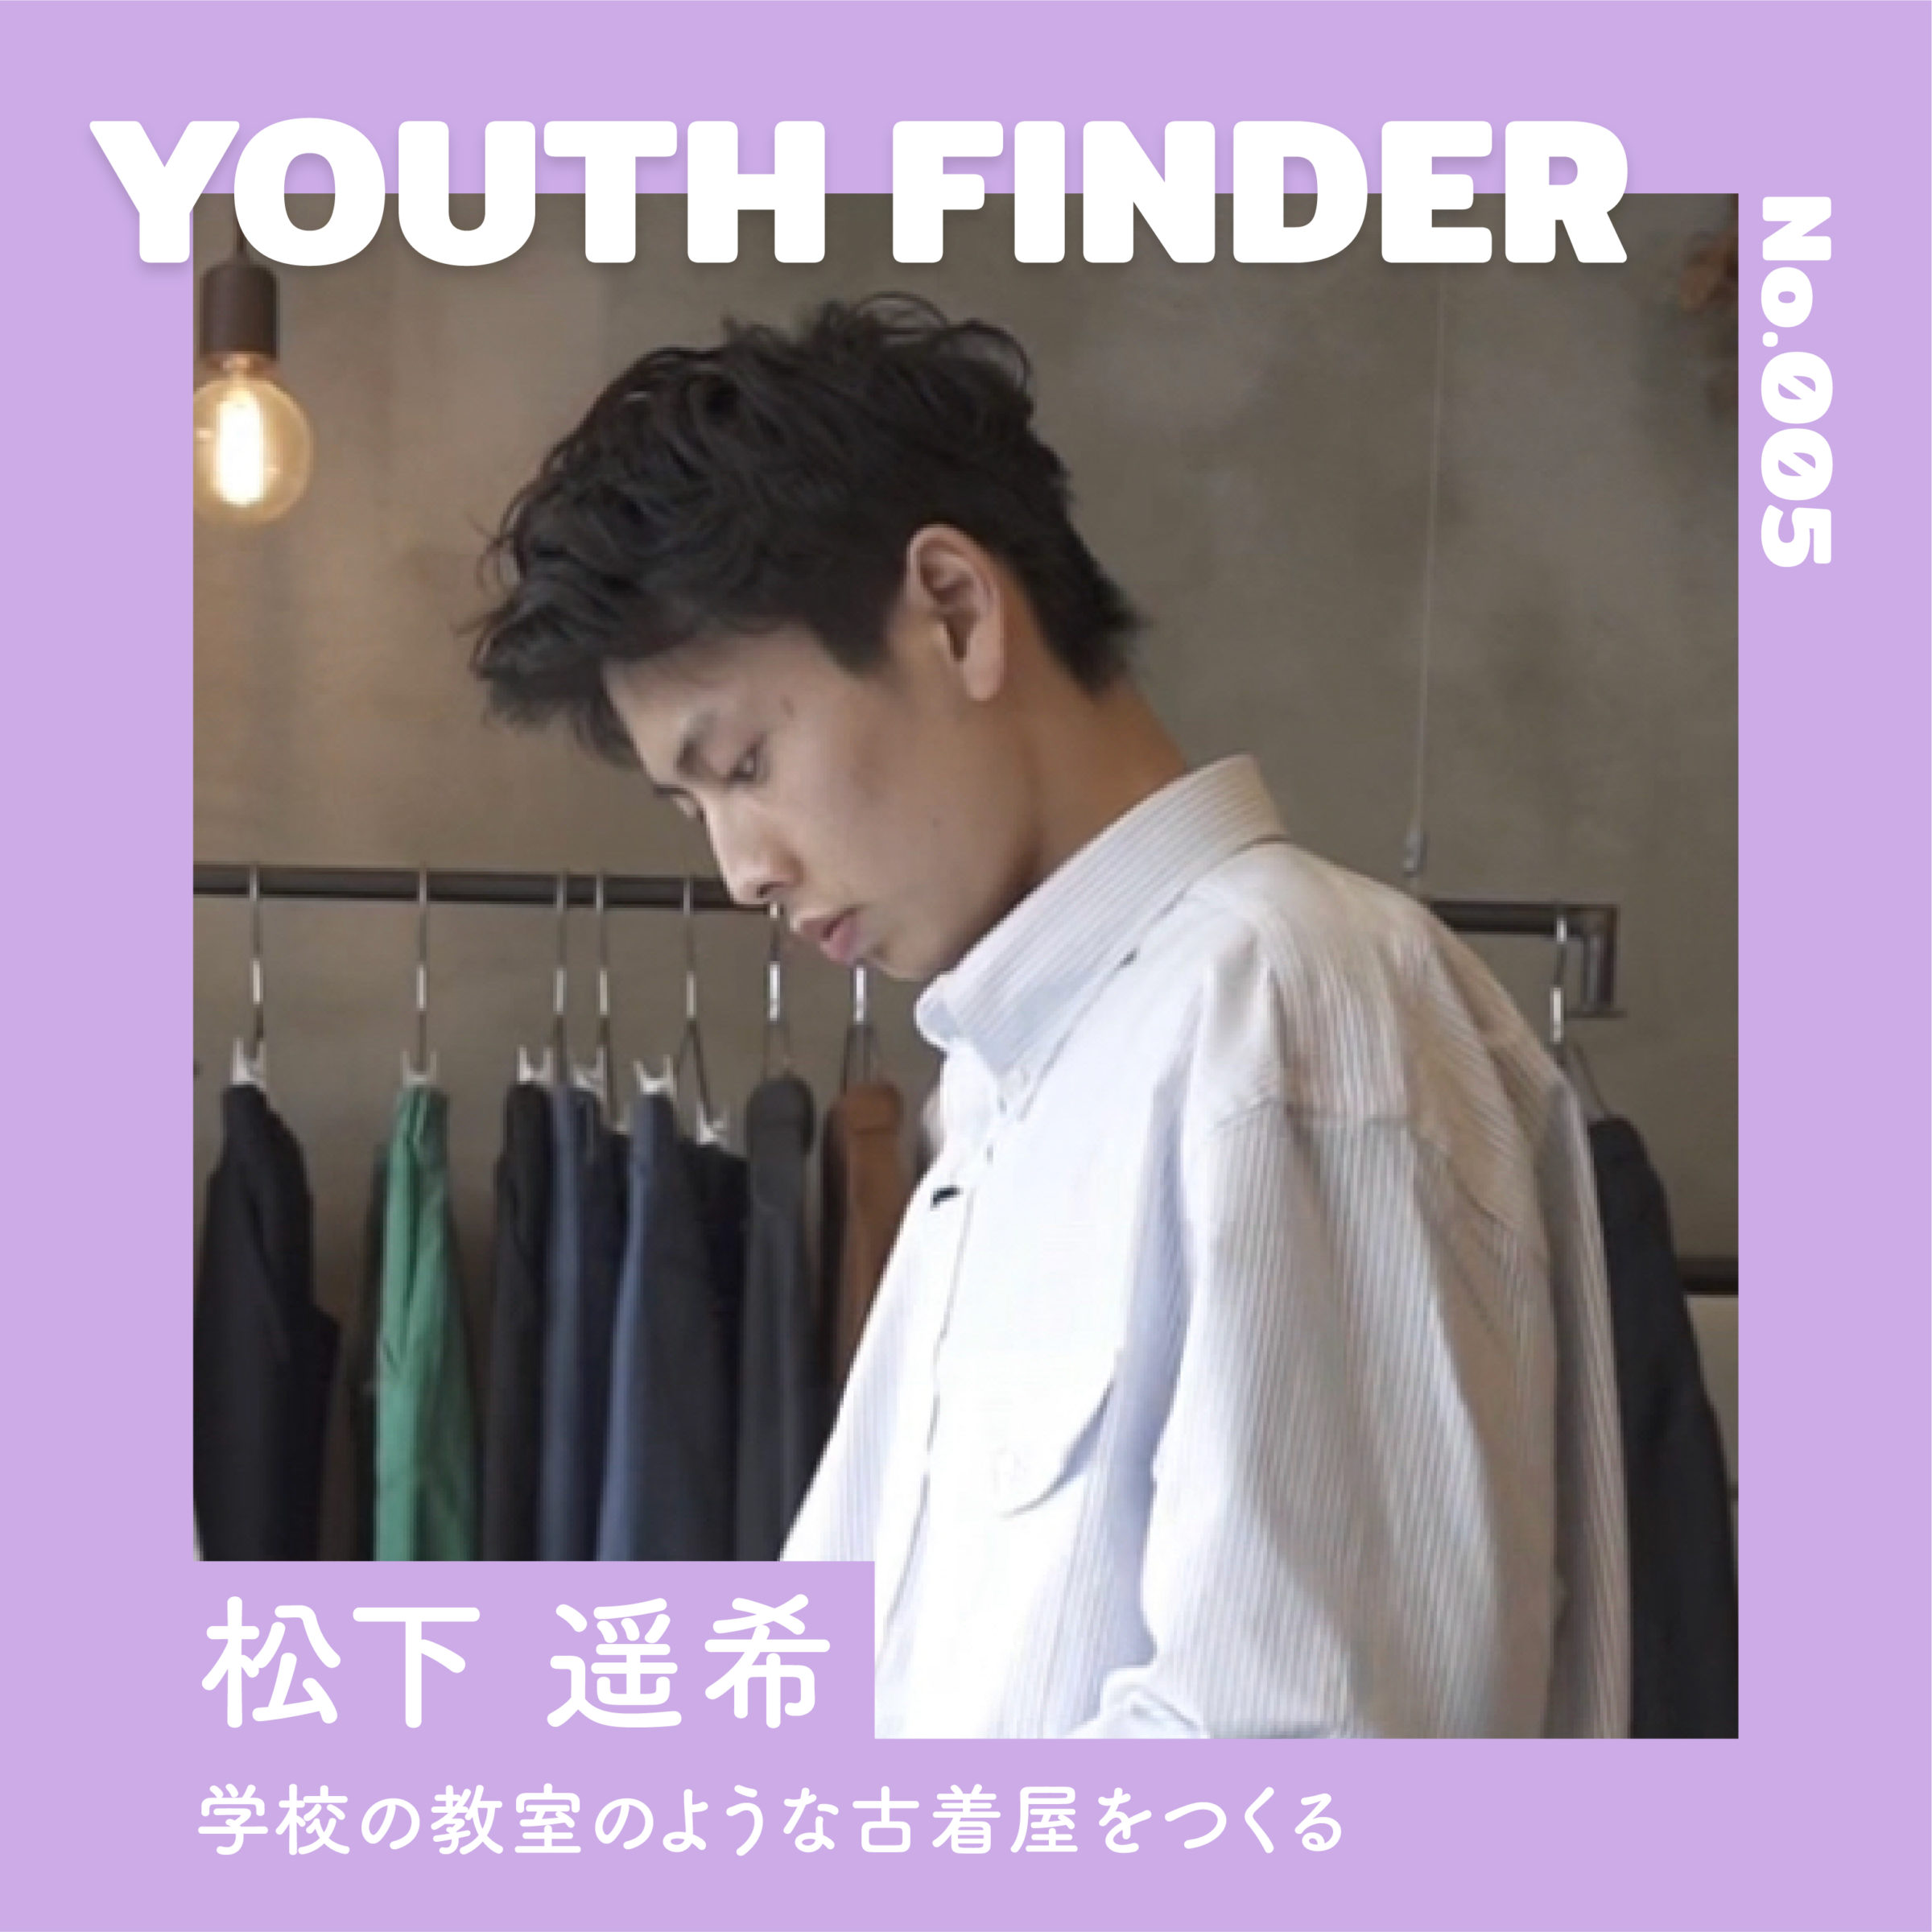 学校の教室のような古着屋をつくる 松下遥希さん【Youth Finder】のサムネイル